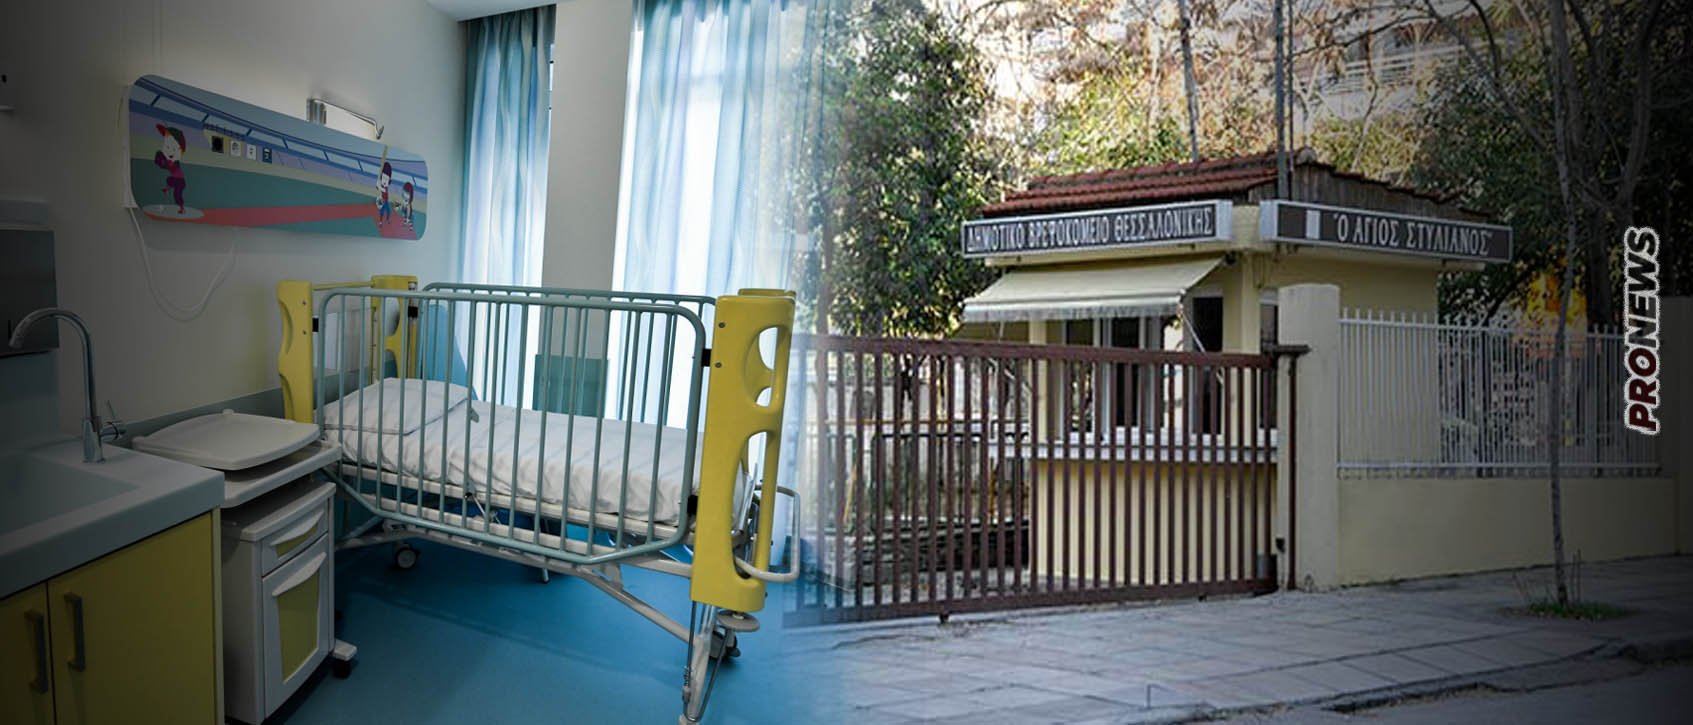 Θεσσαλονίκη: «Έσβησε» κοριτσάκι 2,5 ετών στο δημοτικό βρεφοκομείο «Άγιος Στυλιανός»